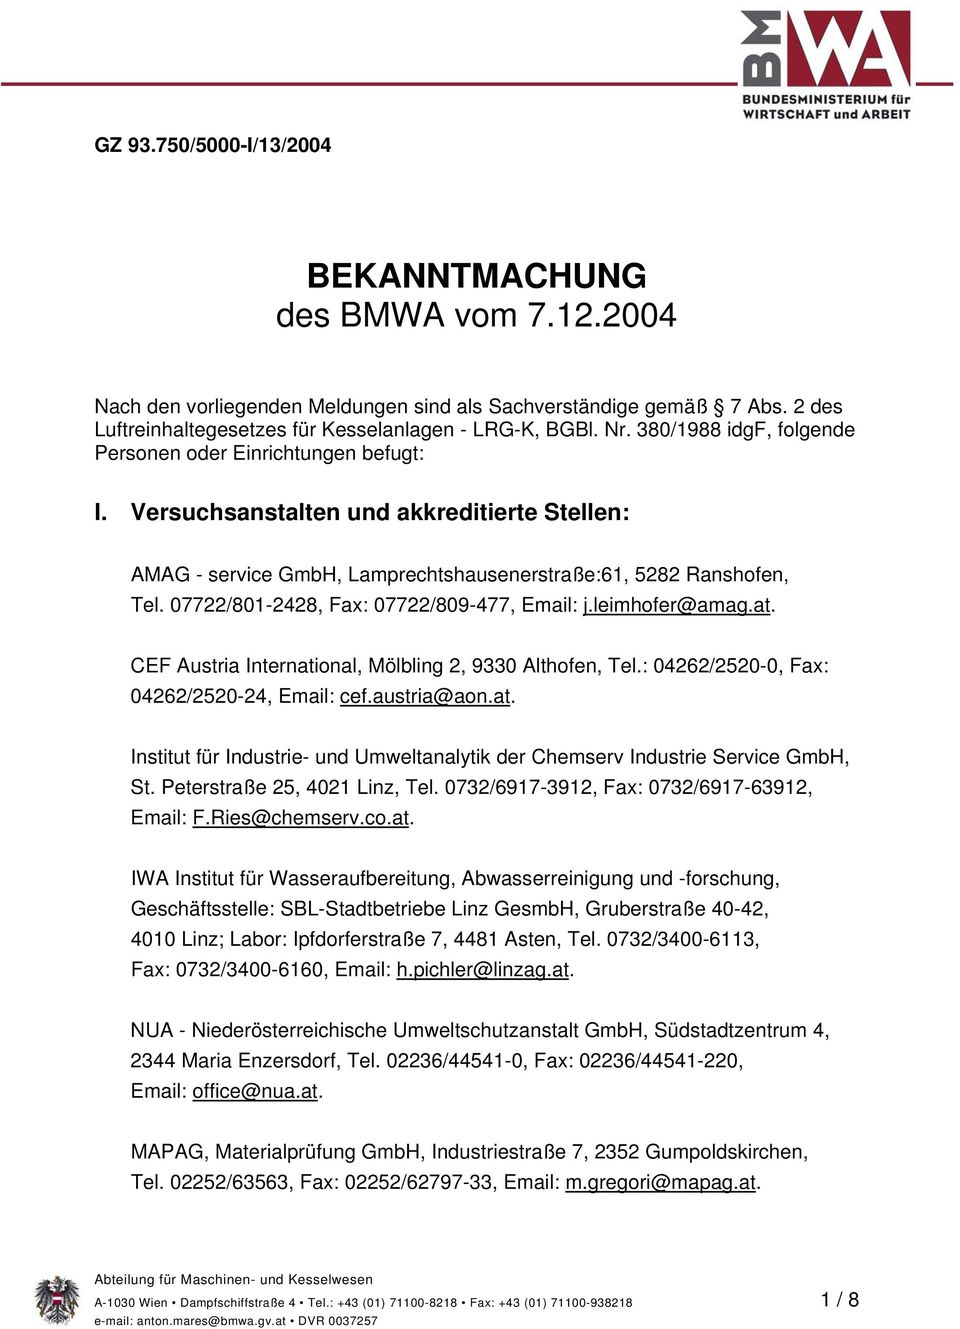 07722/801-2428, Fax: 07722/809-477, Email: j.leimhofer@amag.at. CEF Austria International, Mölbling 2, 9330 Althofen, Tel.: 04262/2520-0, Fax: 04262/2520-24, Email: cef.austria@aon.at. Institut für Industrie- und Umweltanalytik der Chemserv Industrie Service GmbH, St.